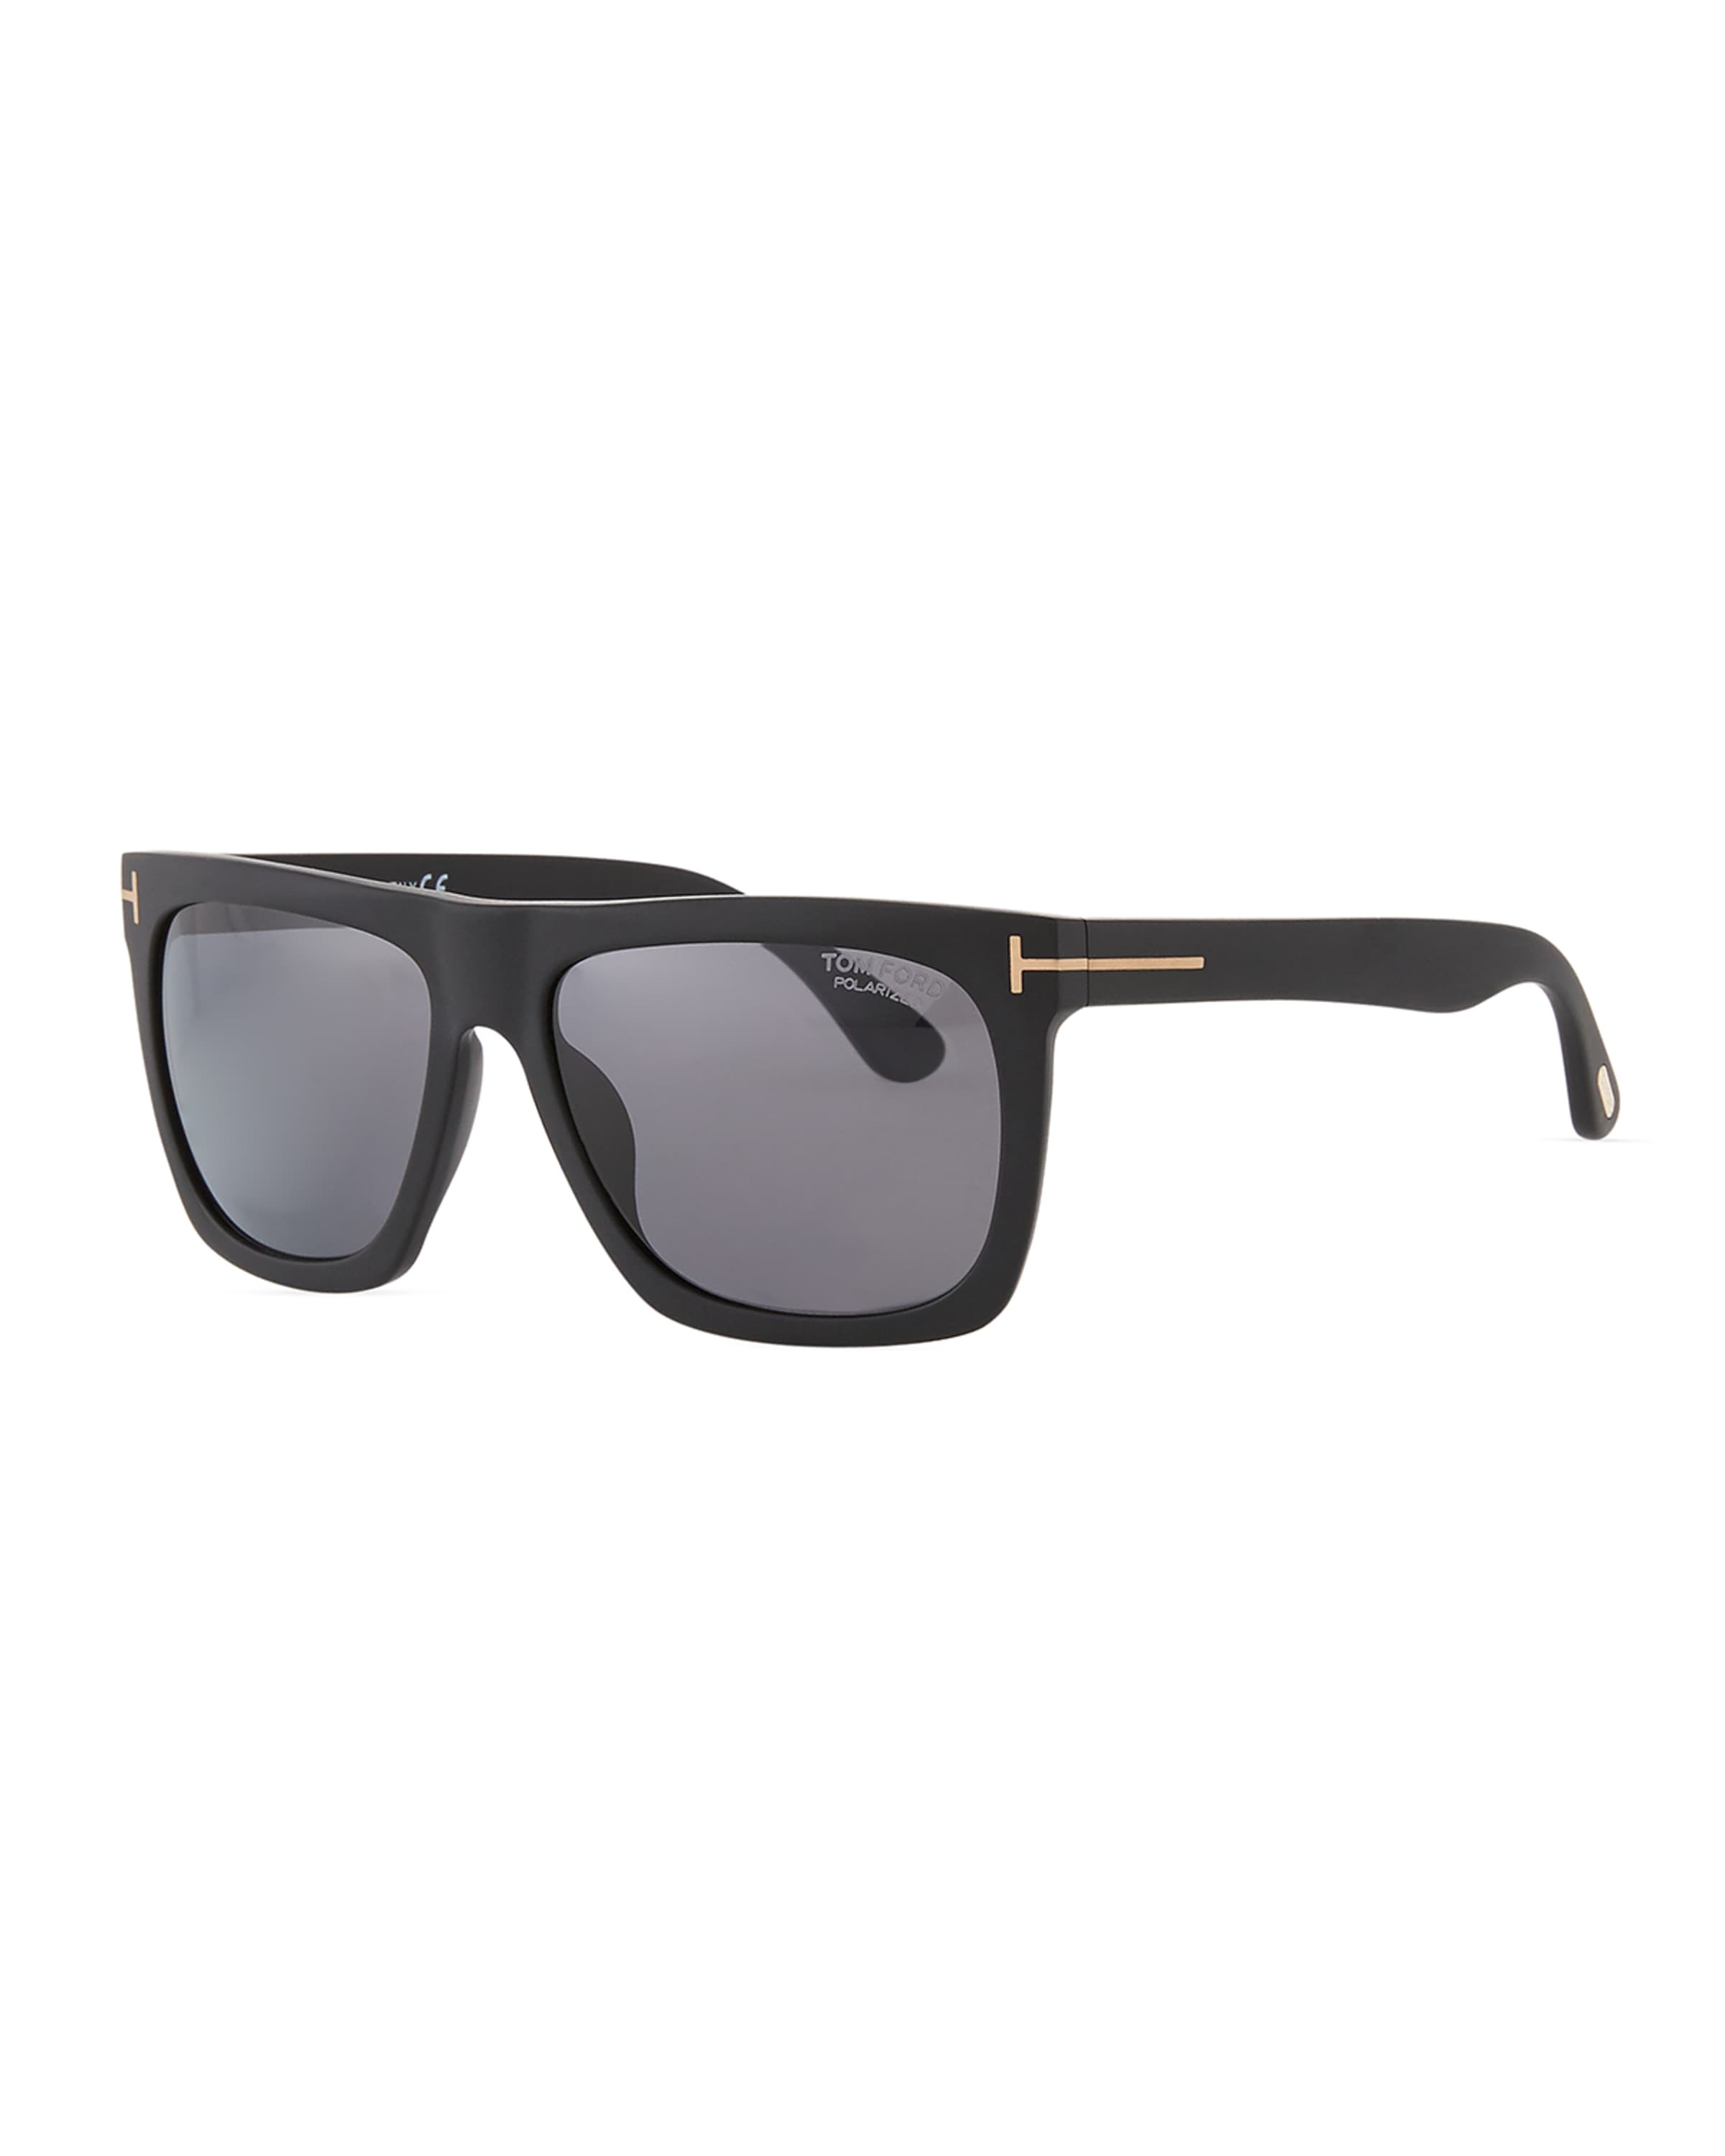 Men's Morgan Acetate Square Sunglasses - 1